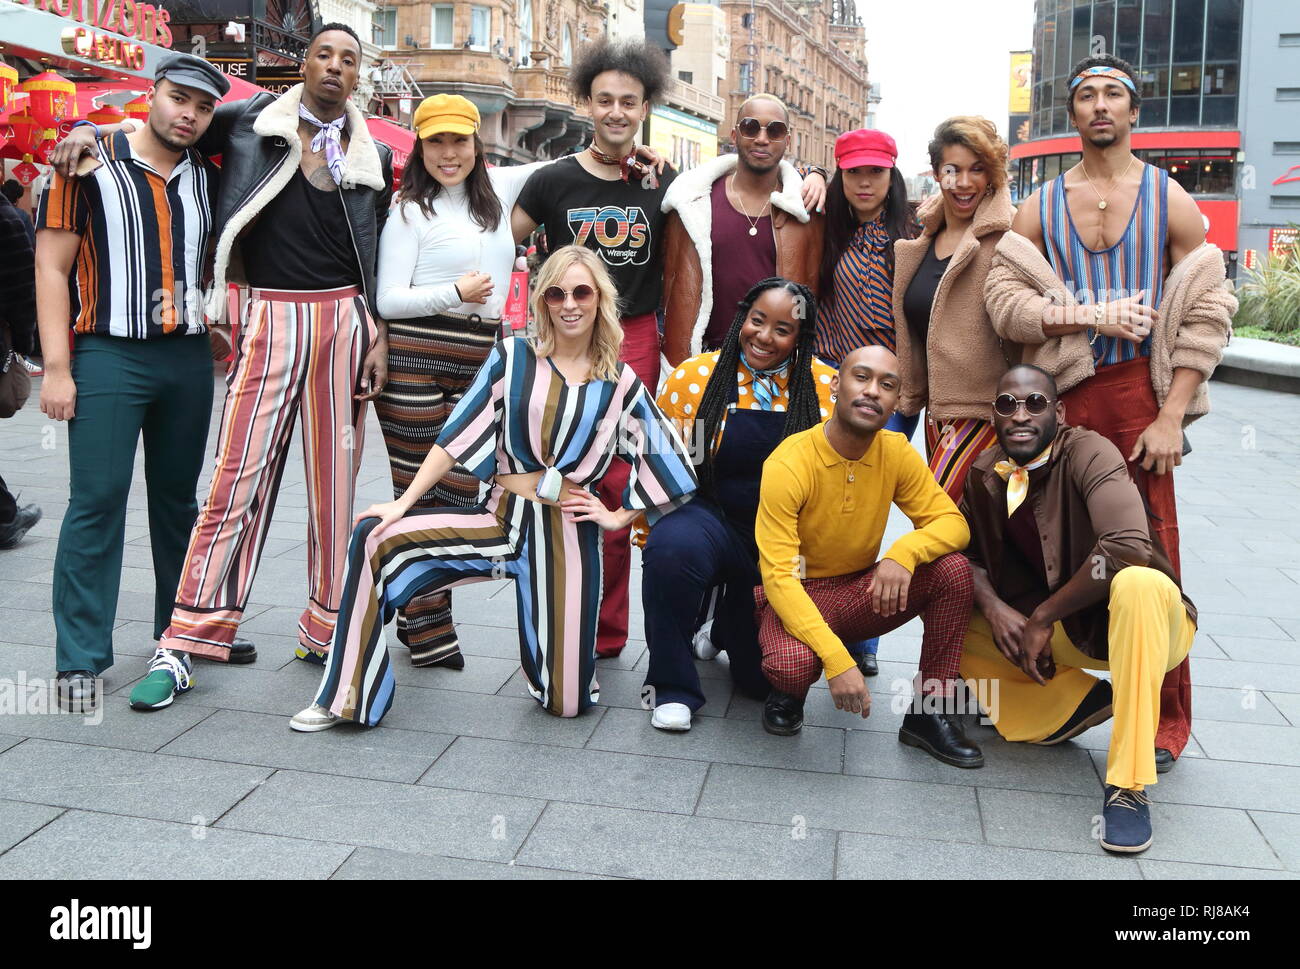 Die amerikanische Seele crew gesehen zusammen posieren für ein Foto. Zu Ehren der BET (Black Entertainment Television) Netzwerk von Groovy neue Periode Drama, amerikanische Seele, ein Flash Mob Dance Übernahme auf den Straßen von London. Stockfoto